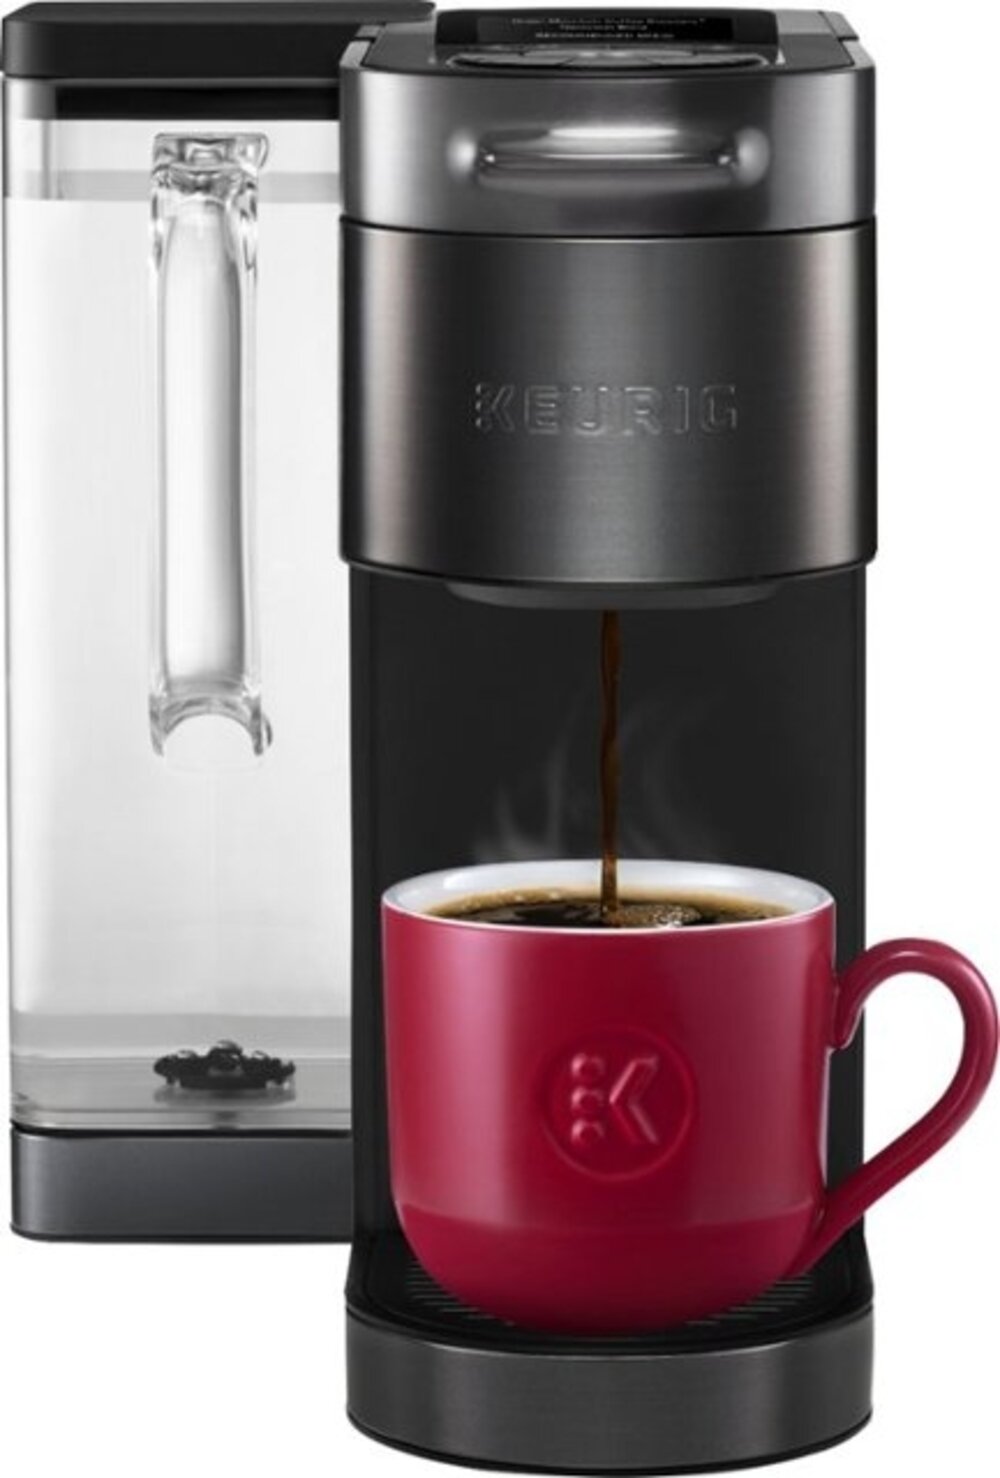 https://assets.wfcdn.com/im/51604207/compr-r85/1601/160126737/keurig-k-supreme-plus-smart-single-serve-k-cup-pod-coffee-maker.jpg